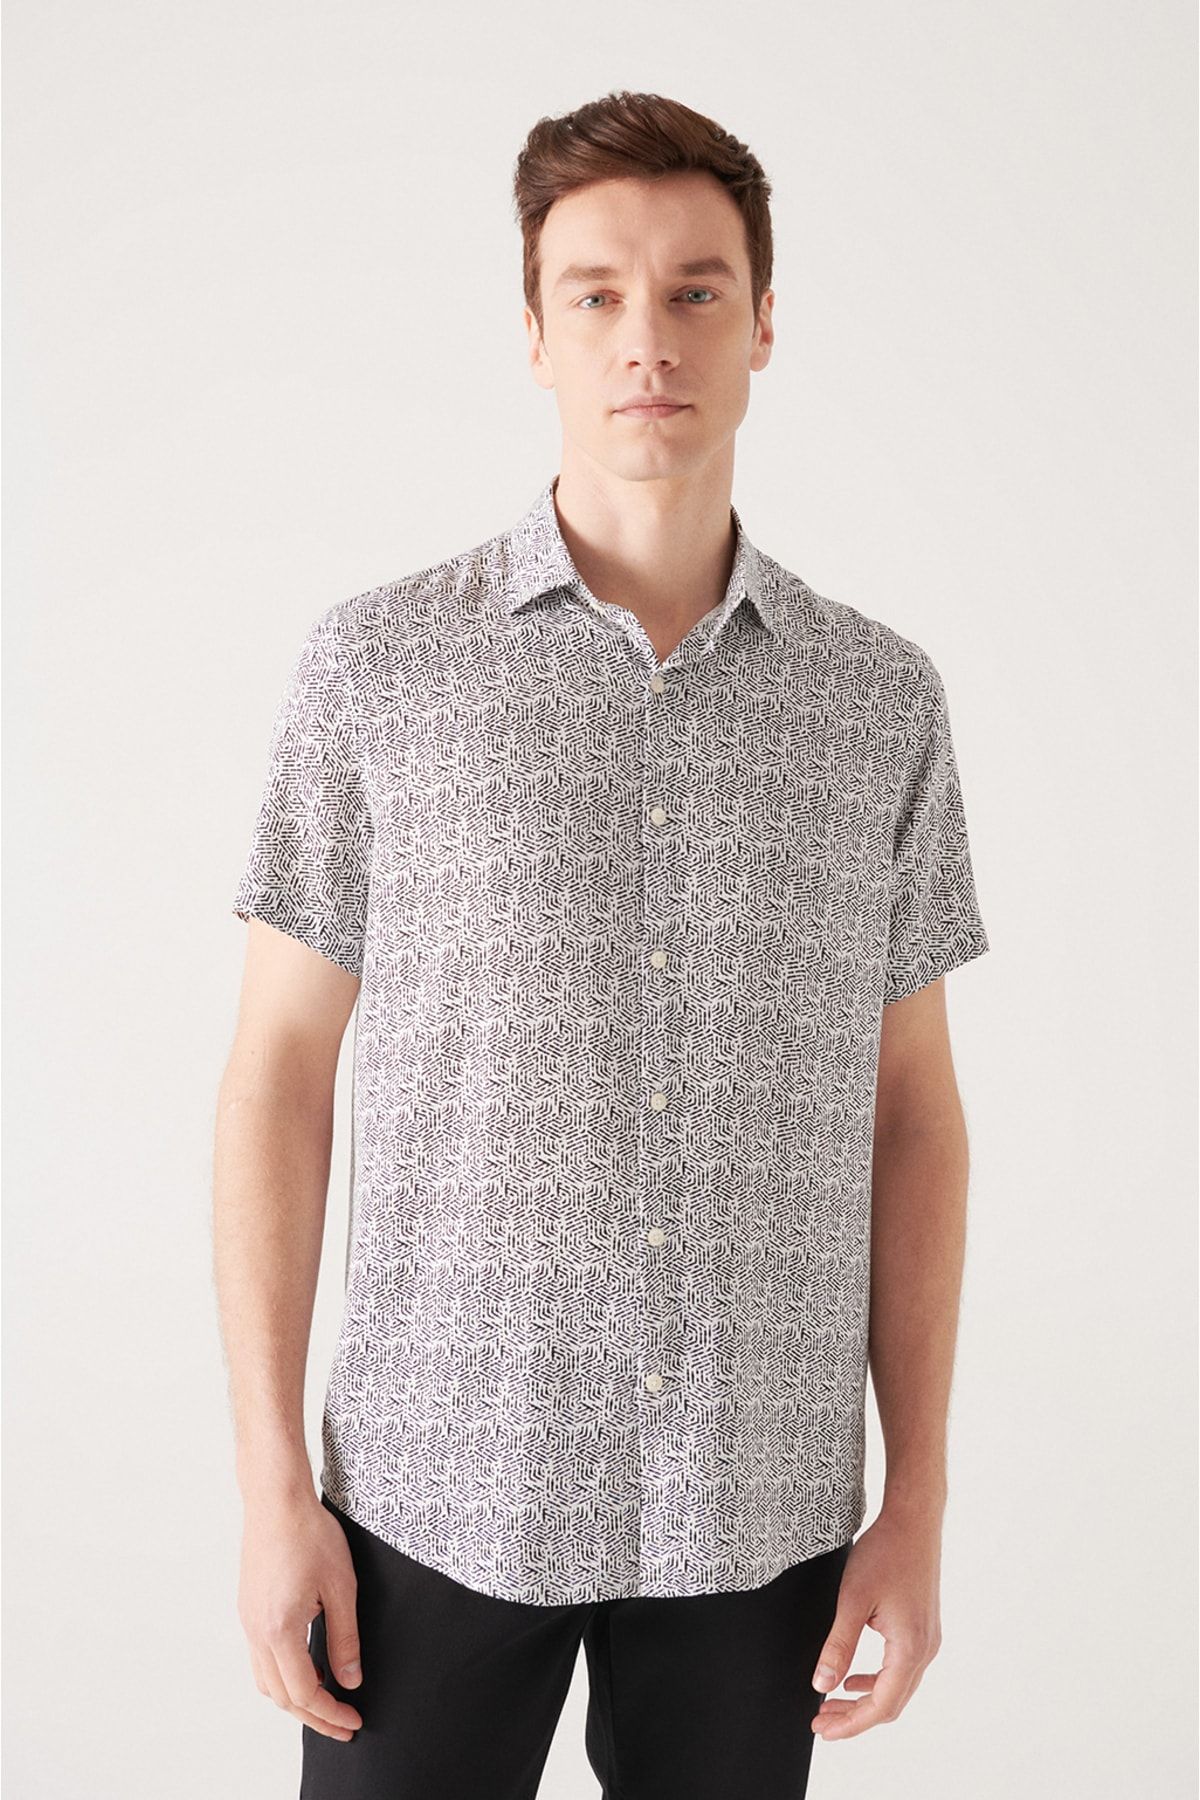 پیراهن مشکی مدل دکمه ای آستین کوتاه طرحدار مردانه آوا Avva (برند ترکیه)